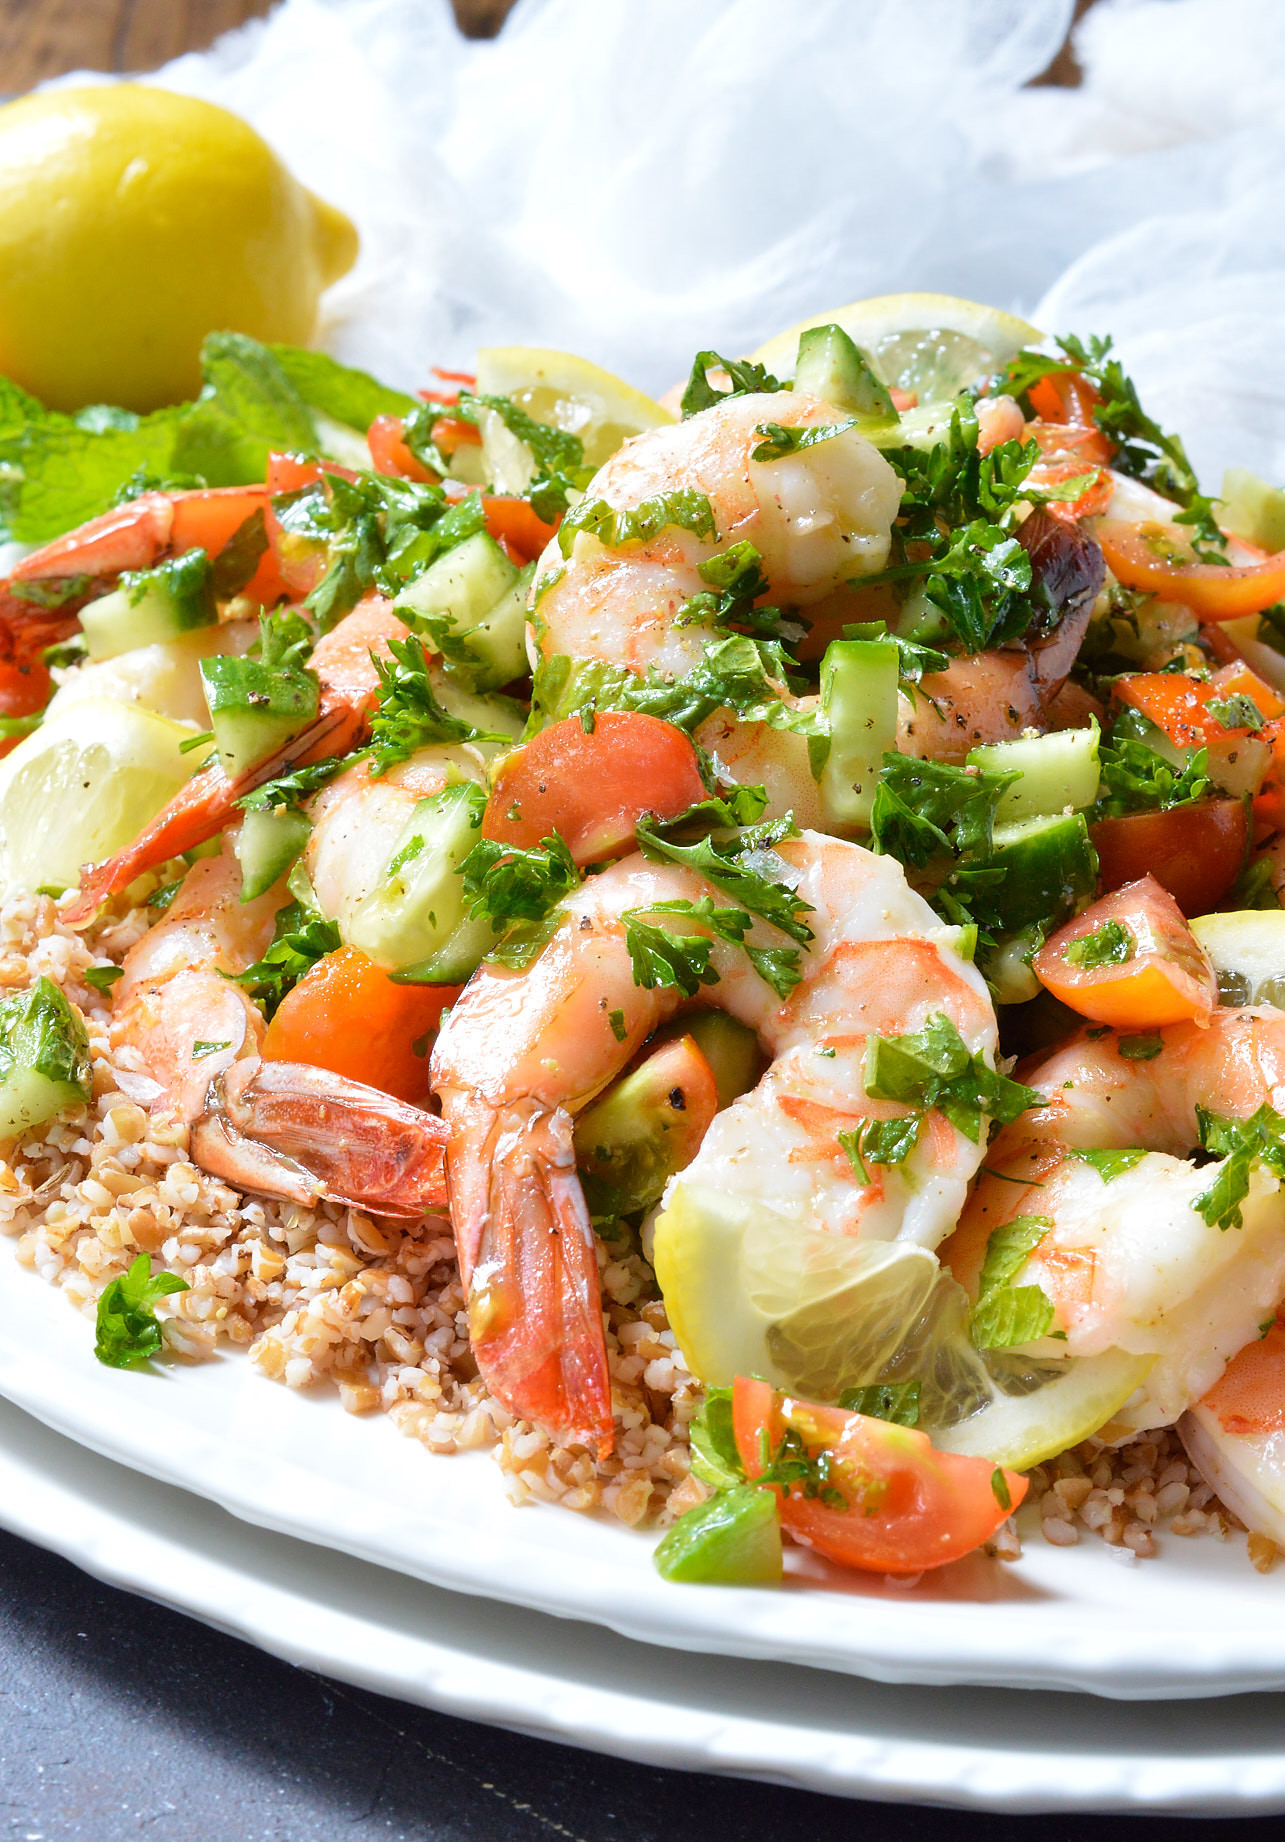 Recipes Using Salad Shrimp
 Tabouli Shrimp Salad Recipe Whole30 WonkyWonderful